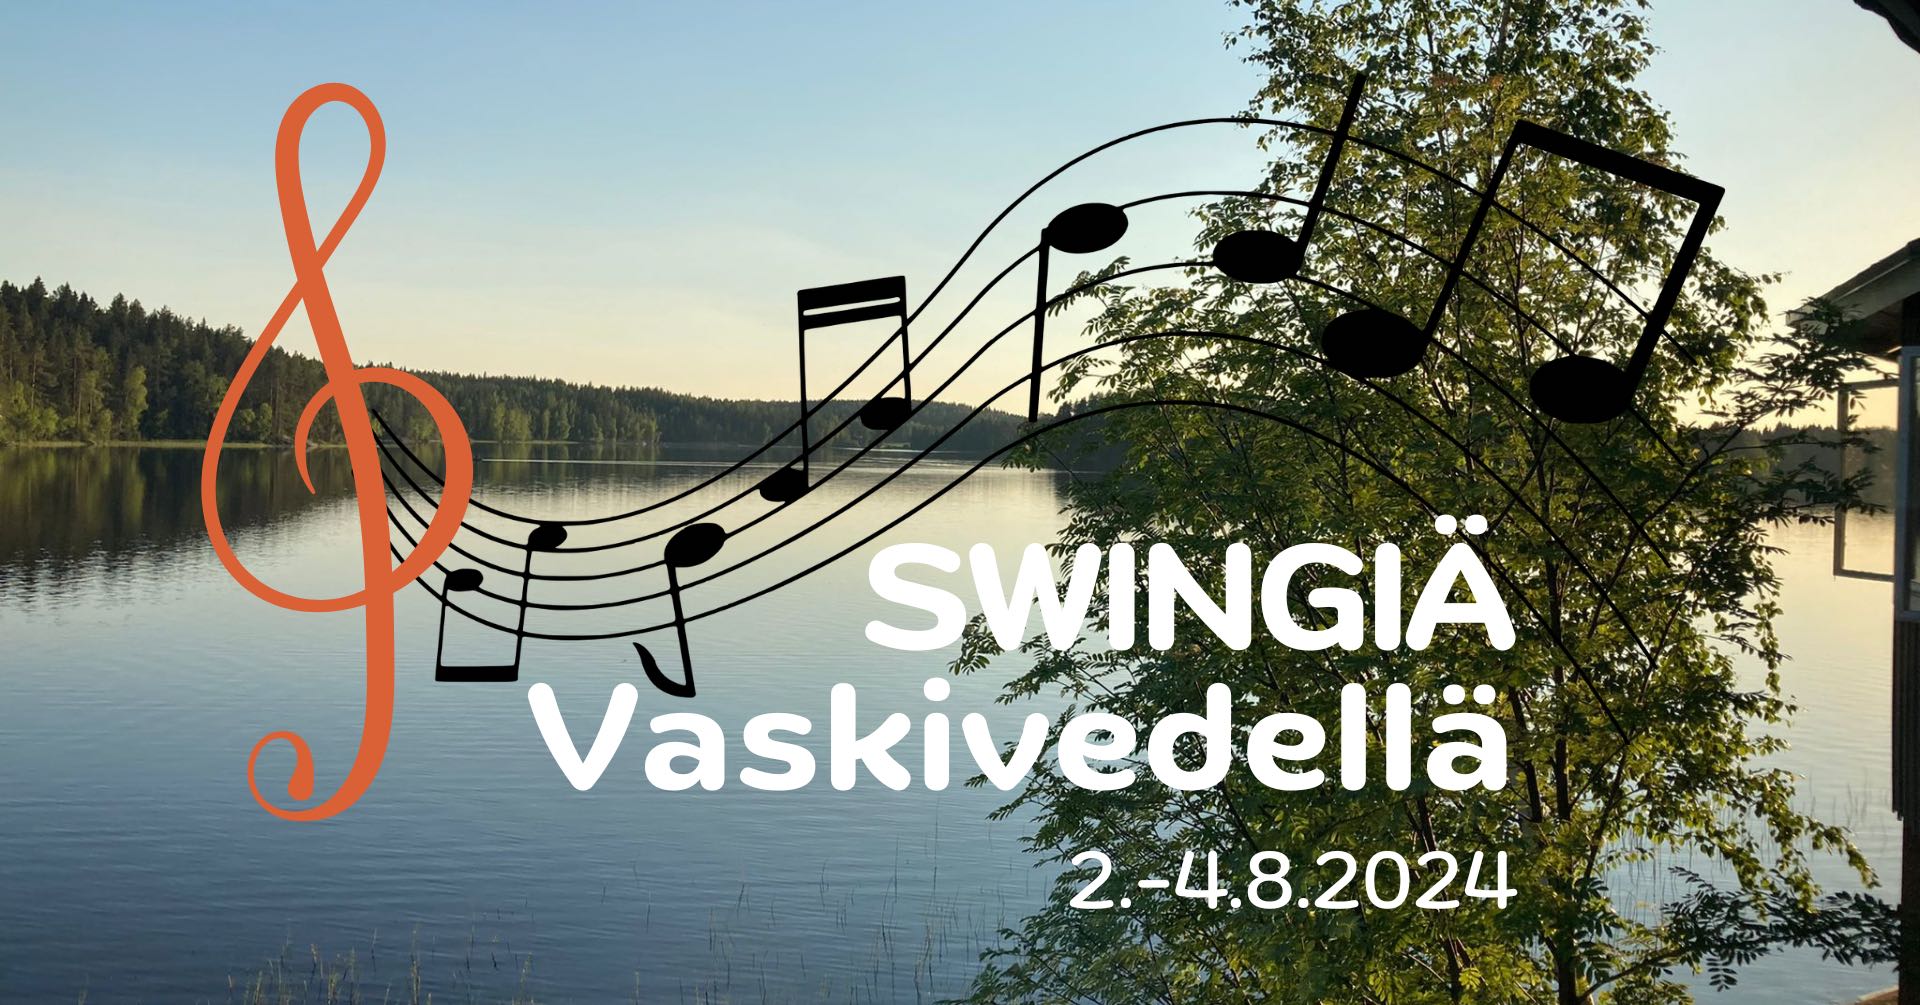 Swingiä Vaskivedellä -tanssileiri järjestetään 2.-4.8.2024